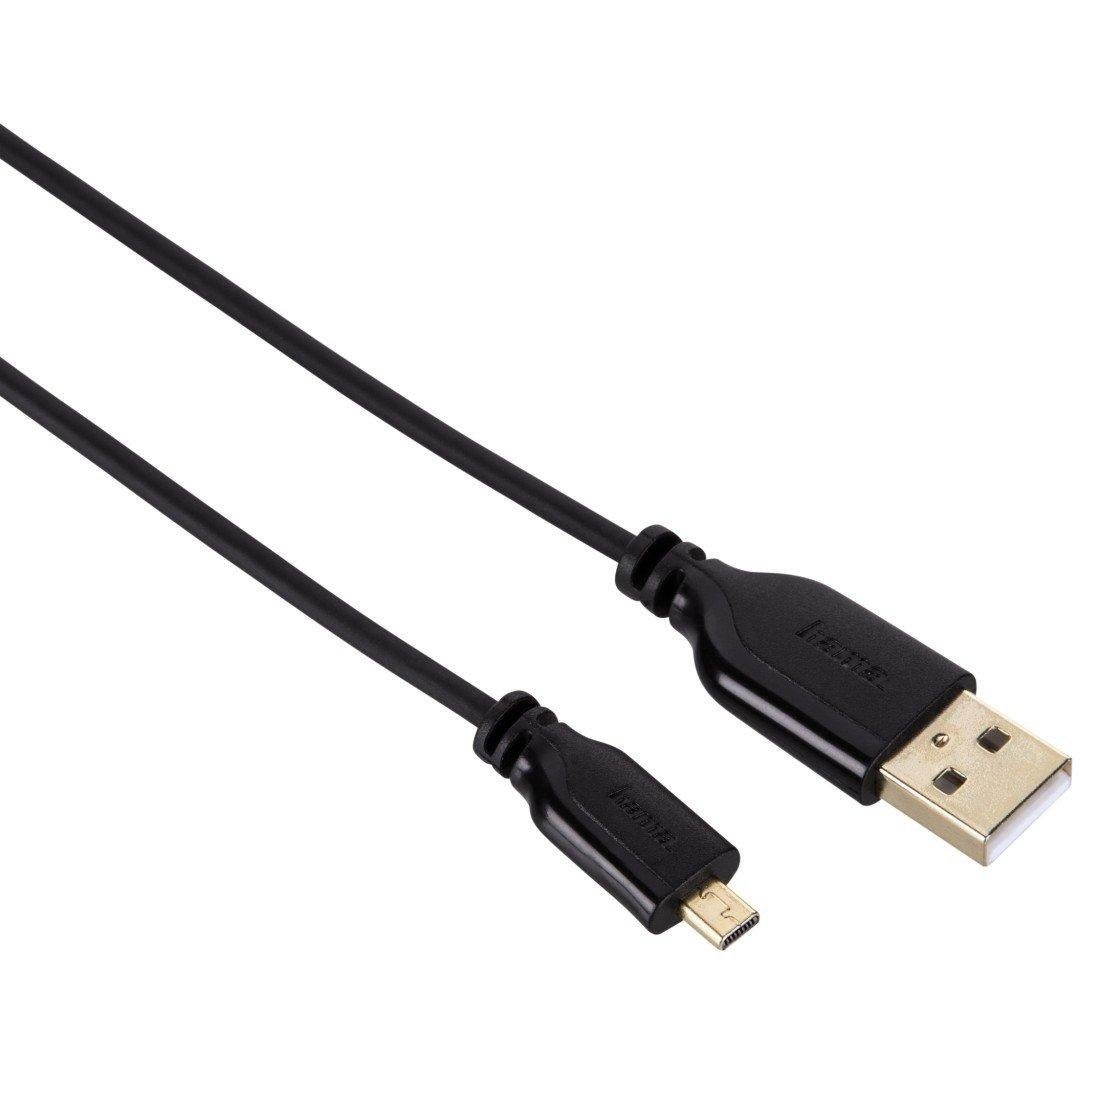 A-Stecker USB-2.0 Mini-B-St. Kabel Hama 74249 Objektivzubehör -